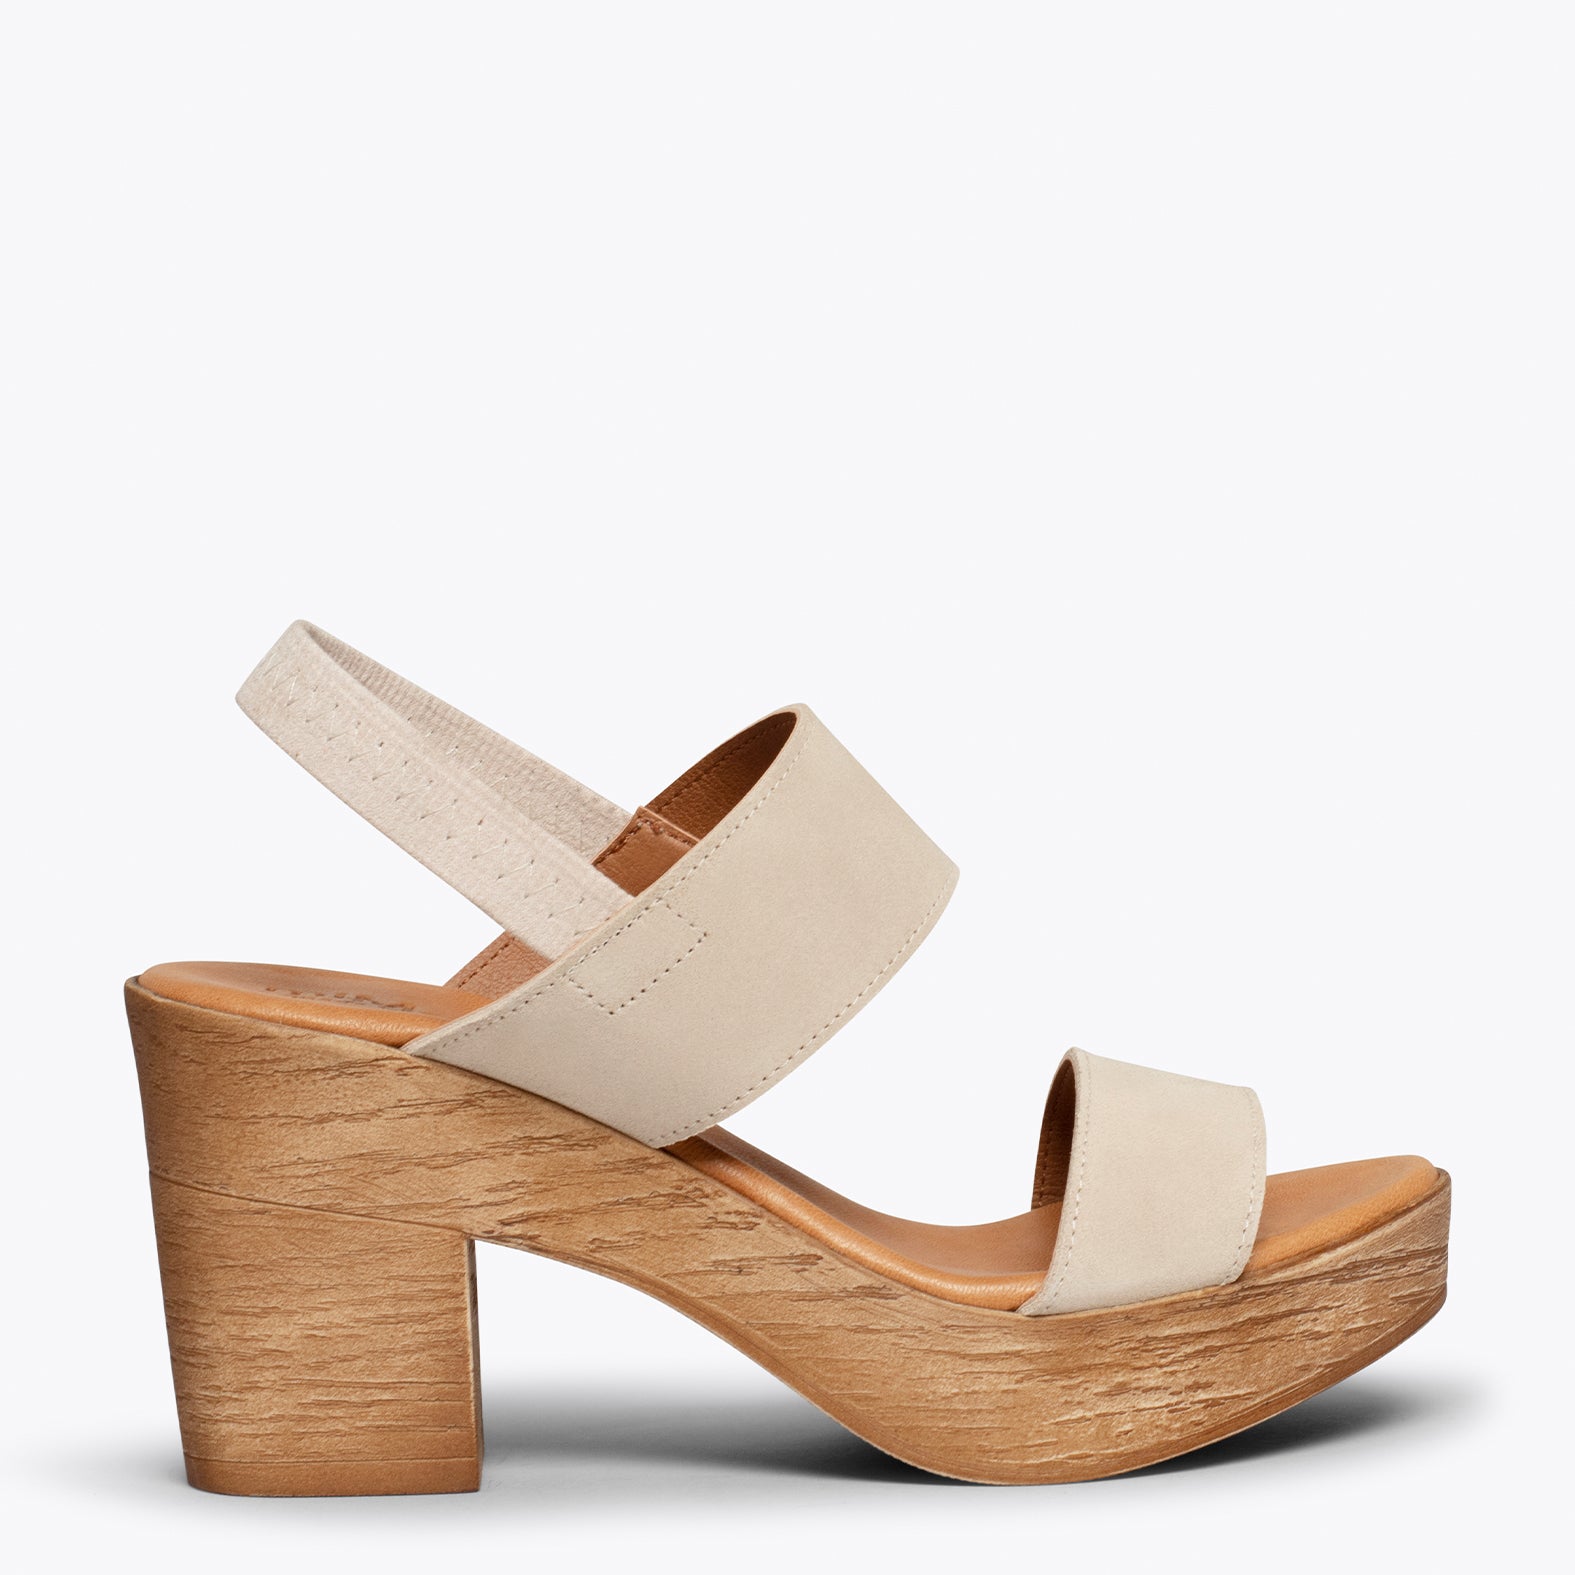 PLATFORM – BEIGE platform sandals with straps